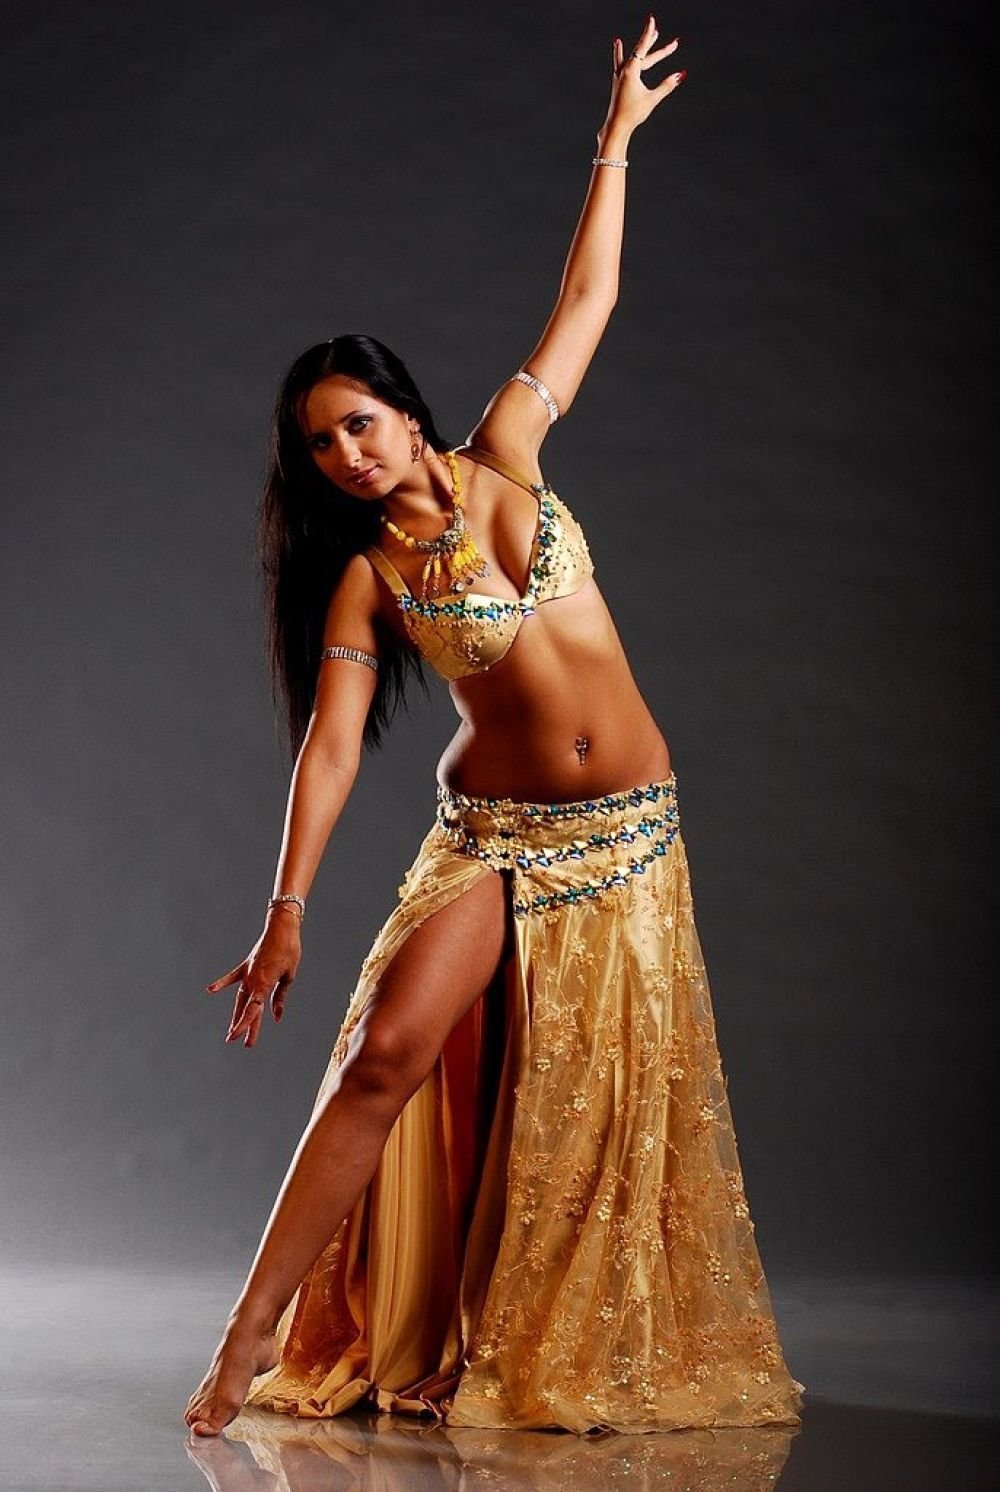 Показать красивые танцы. Белли дэнс танец живота. Танцовщица беллиданс. Индийская танцовщица Белли дэнс.